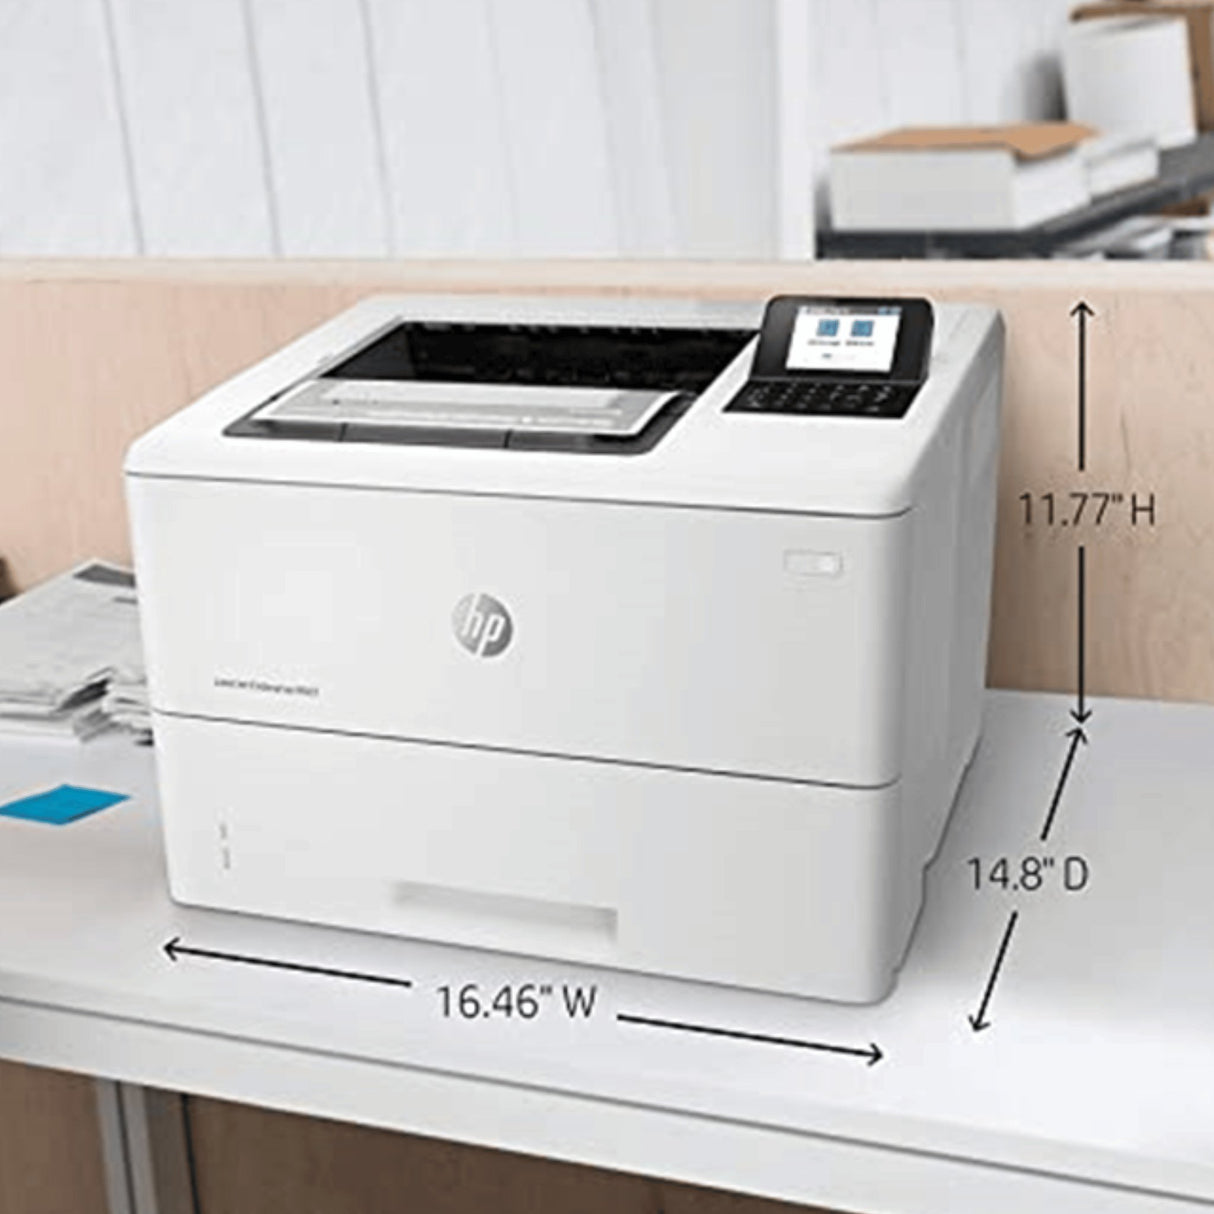 HP LaserJet Enterprise M507dn Monochrome Printer  - KWT Tech Mart